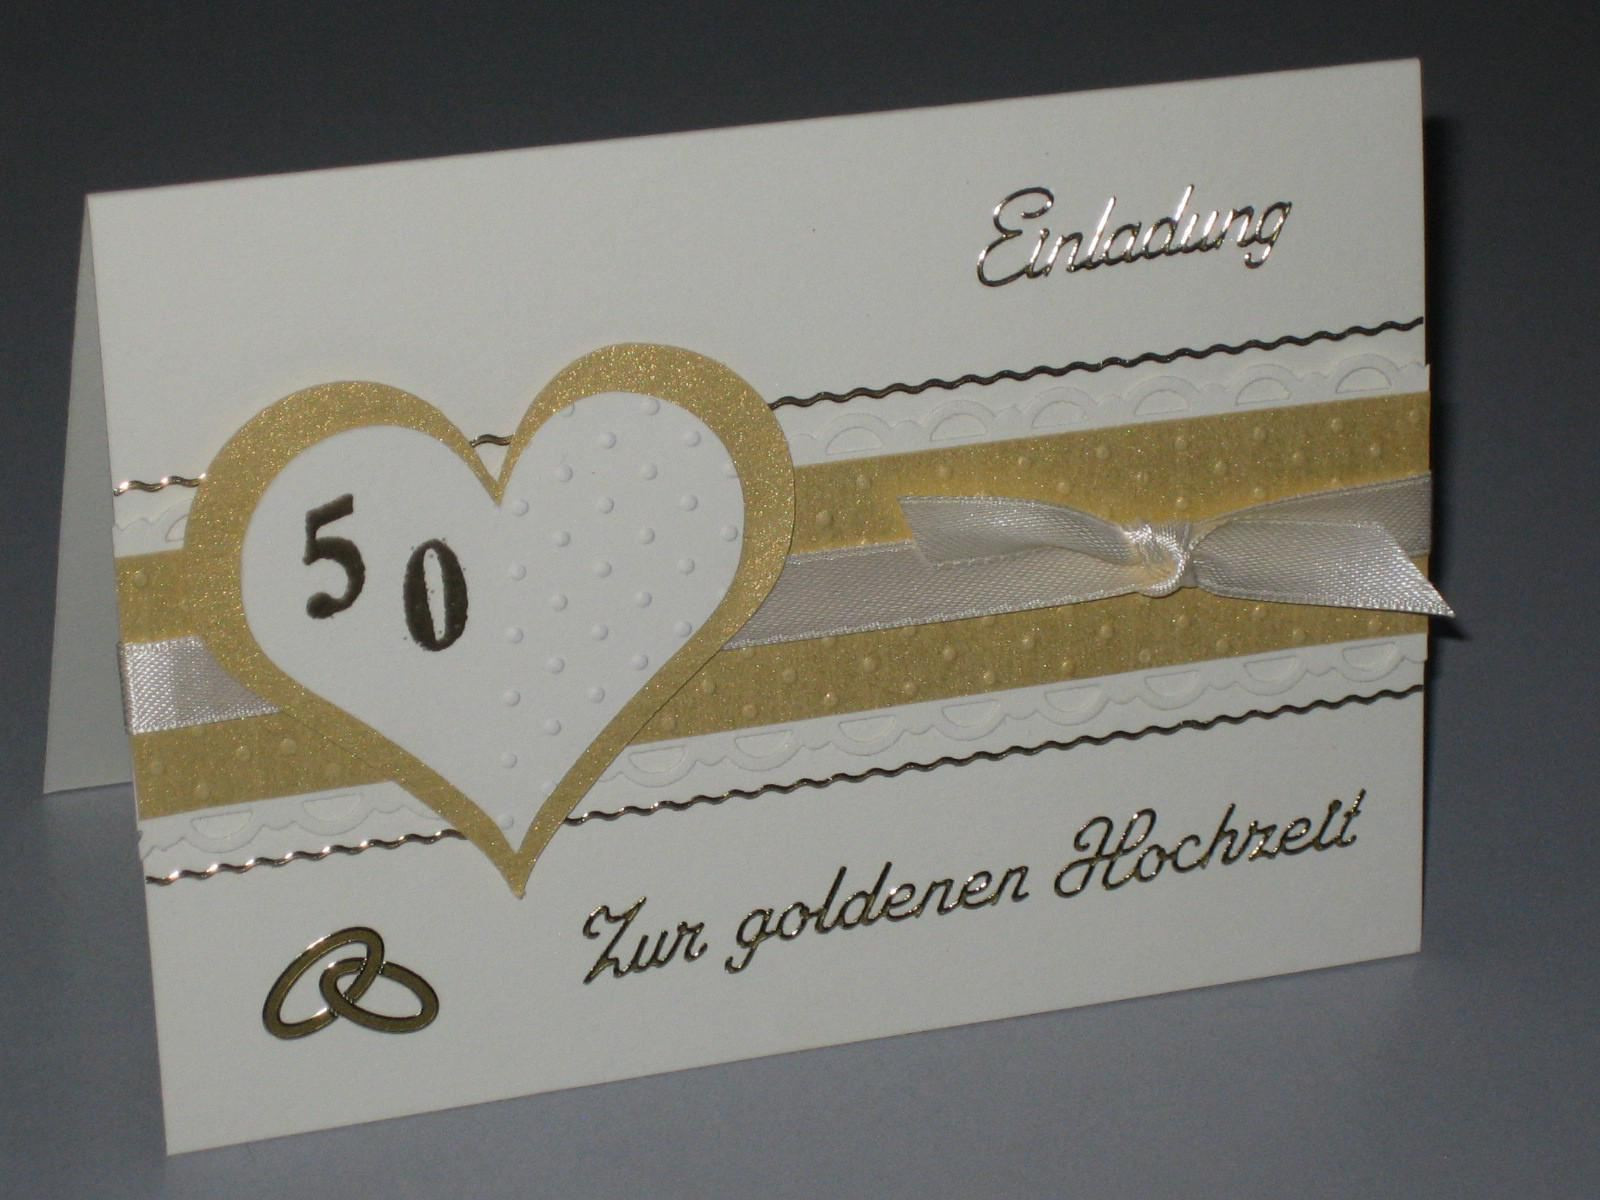 Einladungskarten Hochzeit Selbst Gestalten Kostenlos
 Einladungskarten Goldene Hochzeit Selbst Gestalten